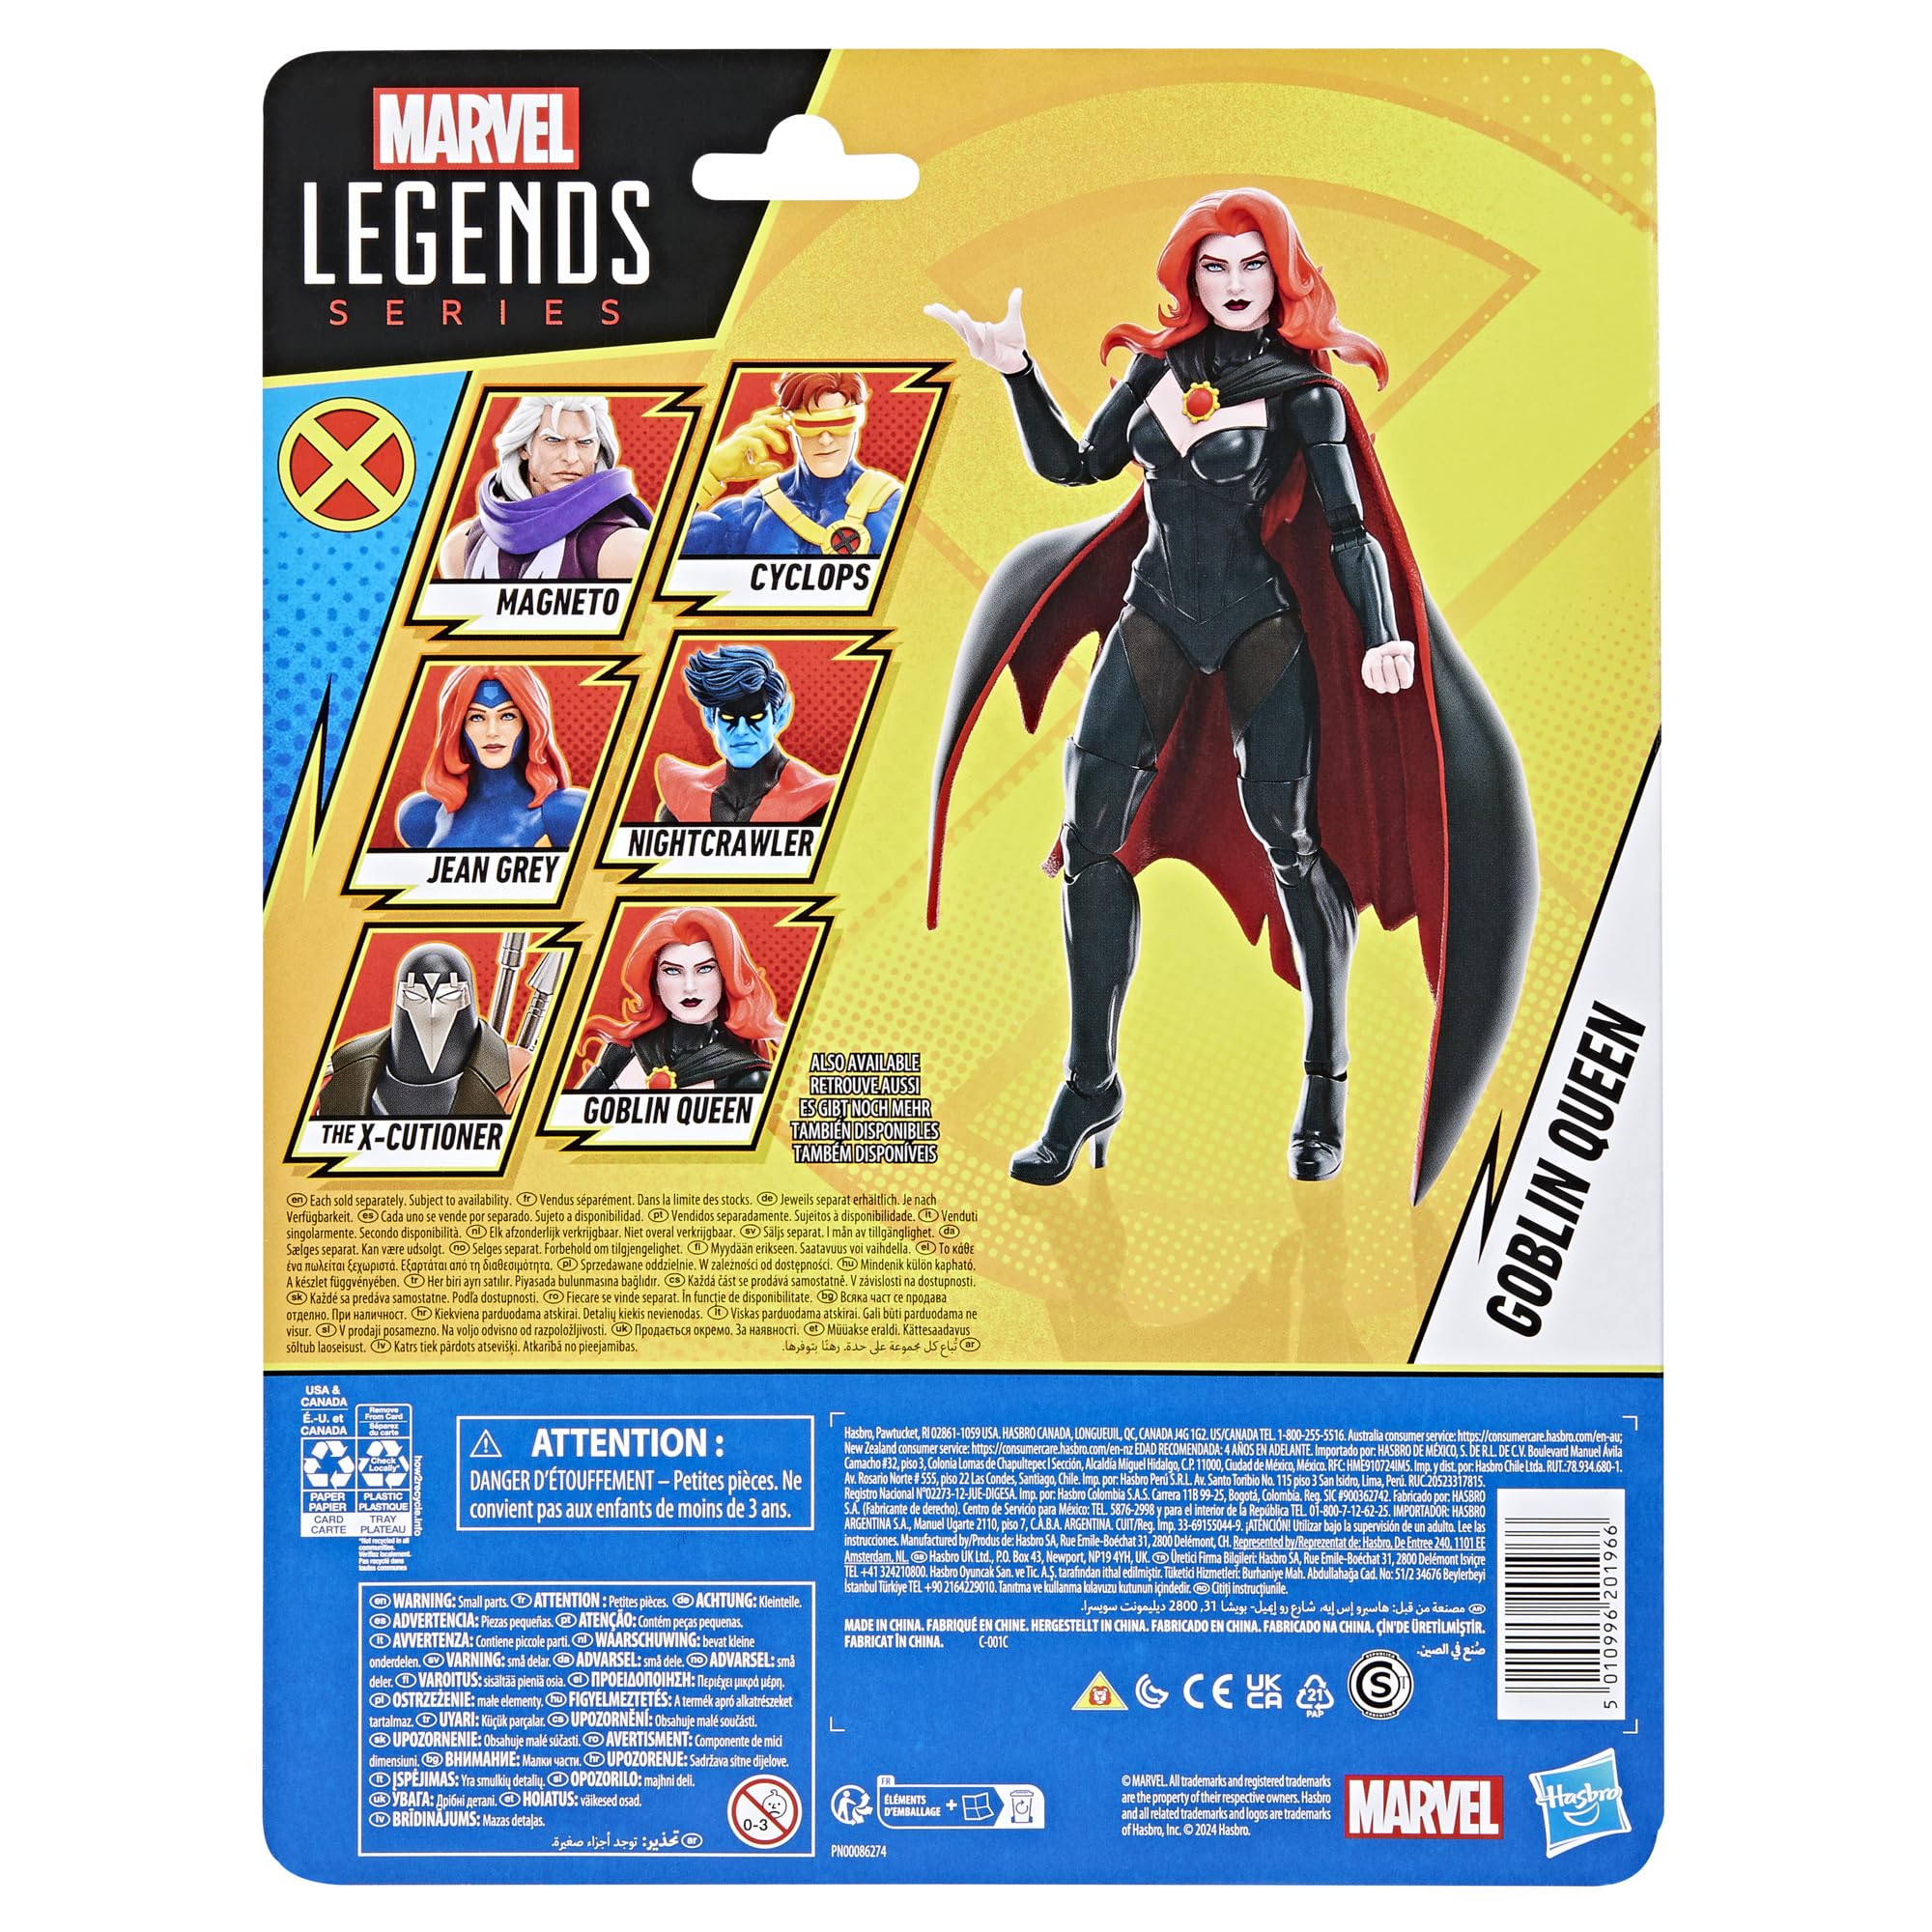 Marvel Legends Series Goblin Queen, X-Men ‘97 Collectible 6-Inch Action Figure